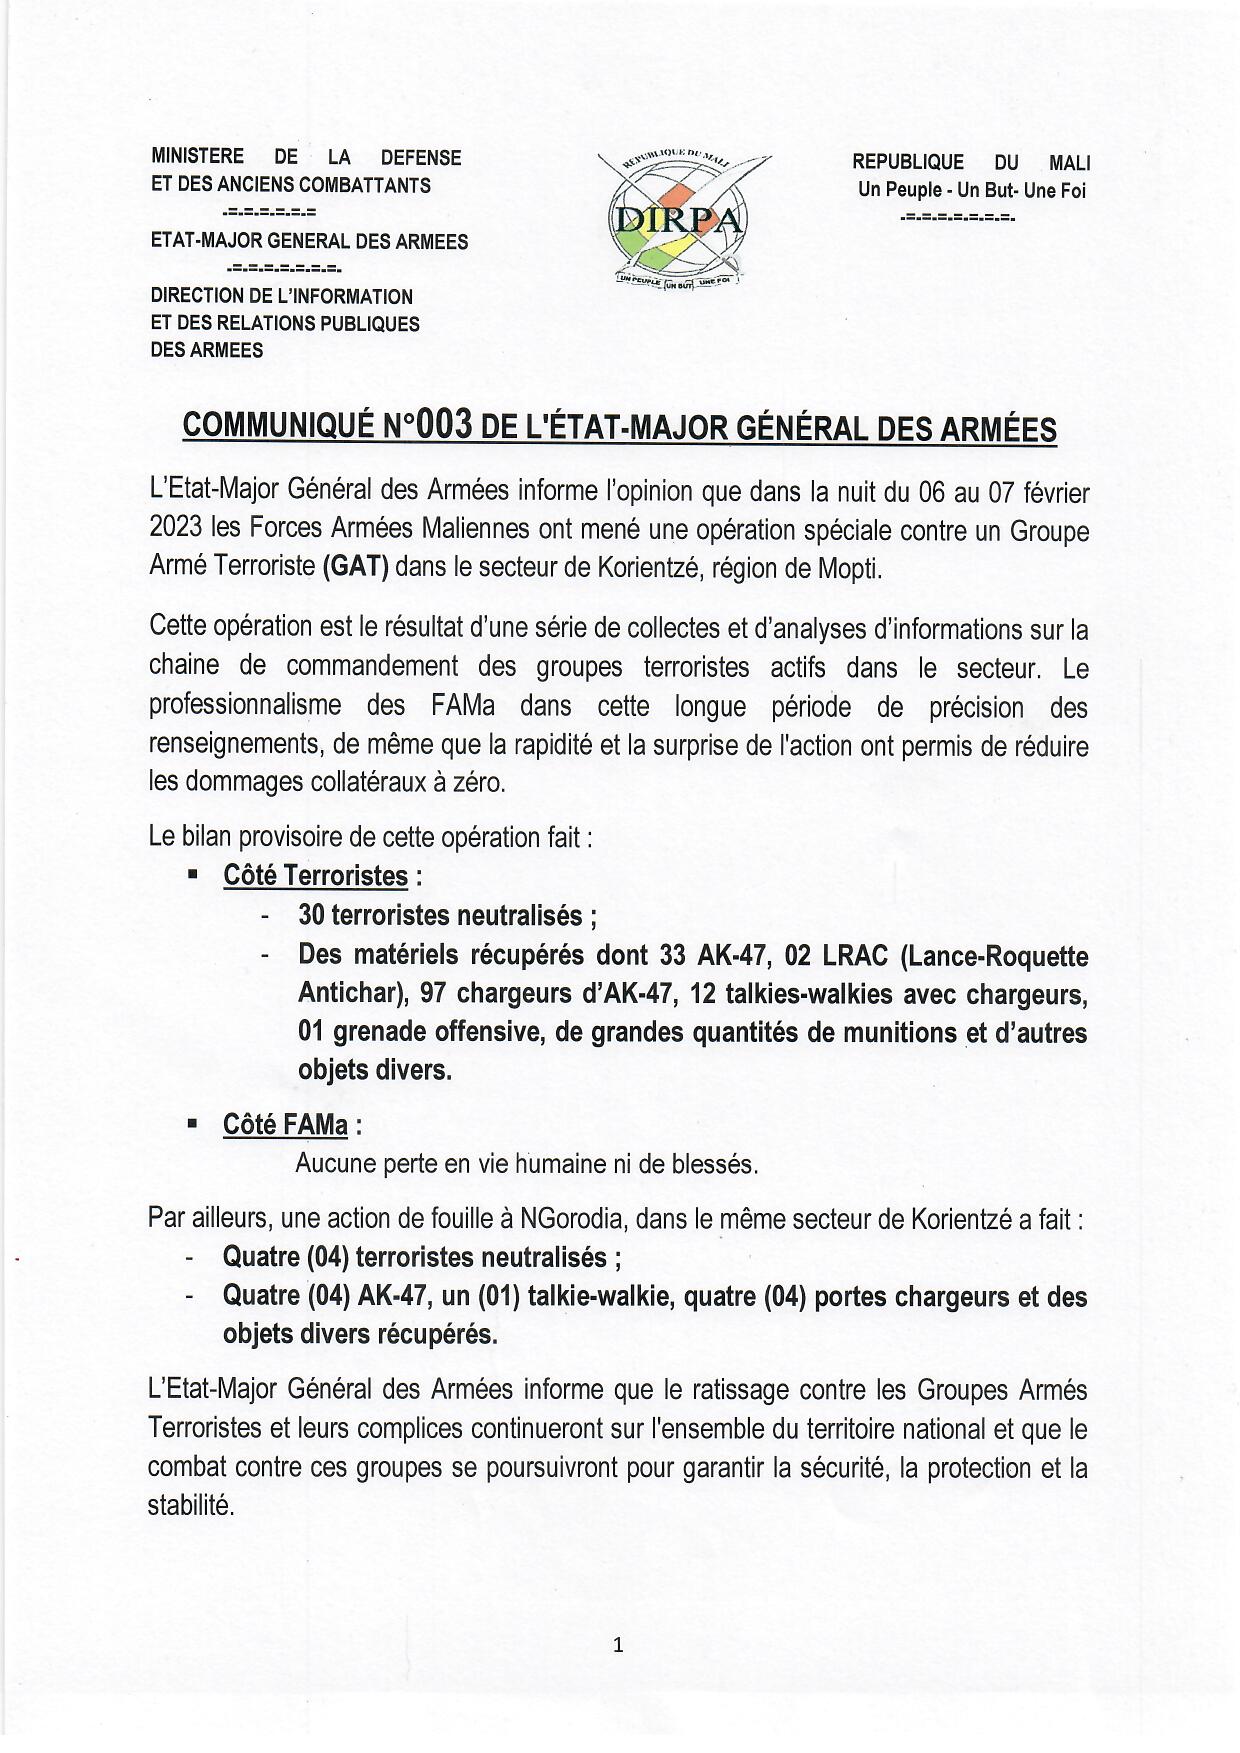  COMMUNIQUÉ N° 003 DE L'ÉTAT-MAJOR GÉNÉRAL DES ARMÉES DU 07 FEVRIER 2023.